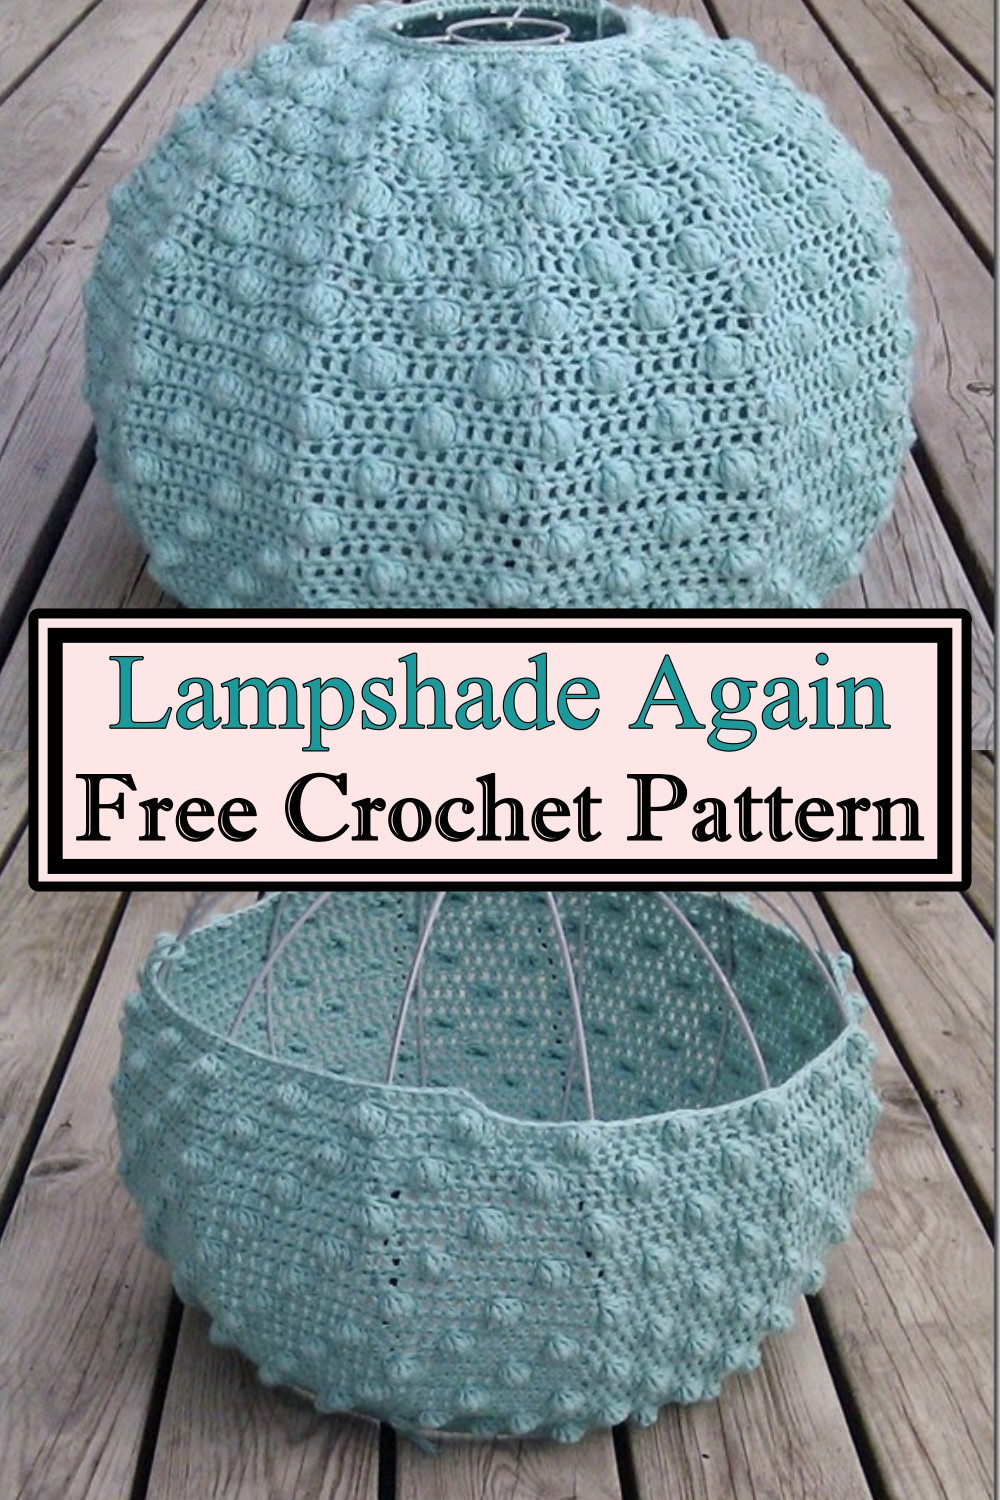 Crochet Lampshade Again